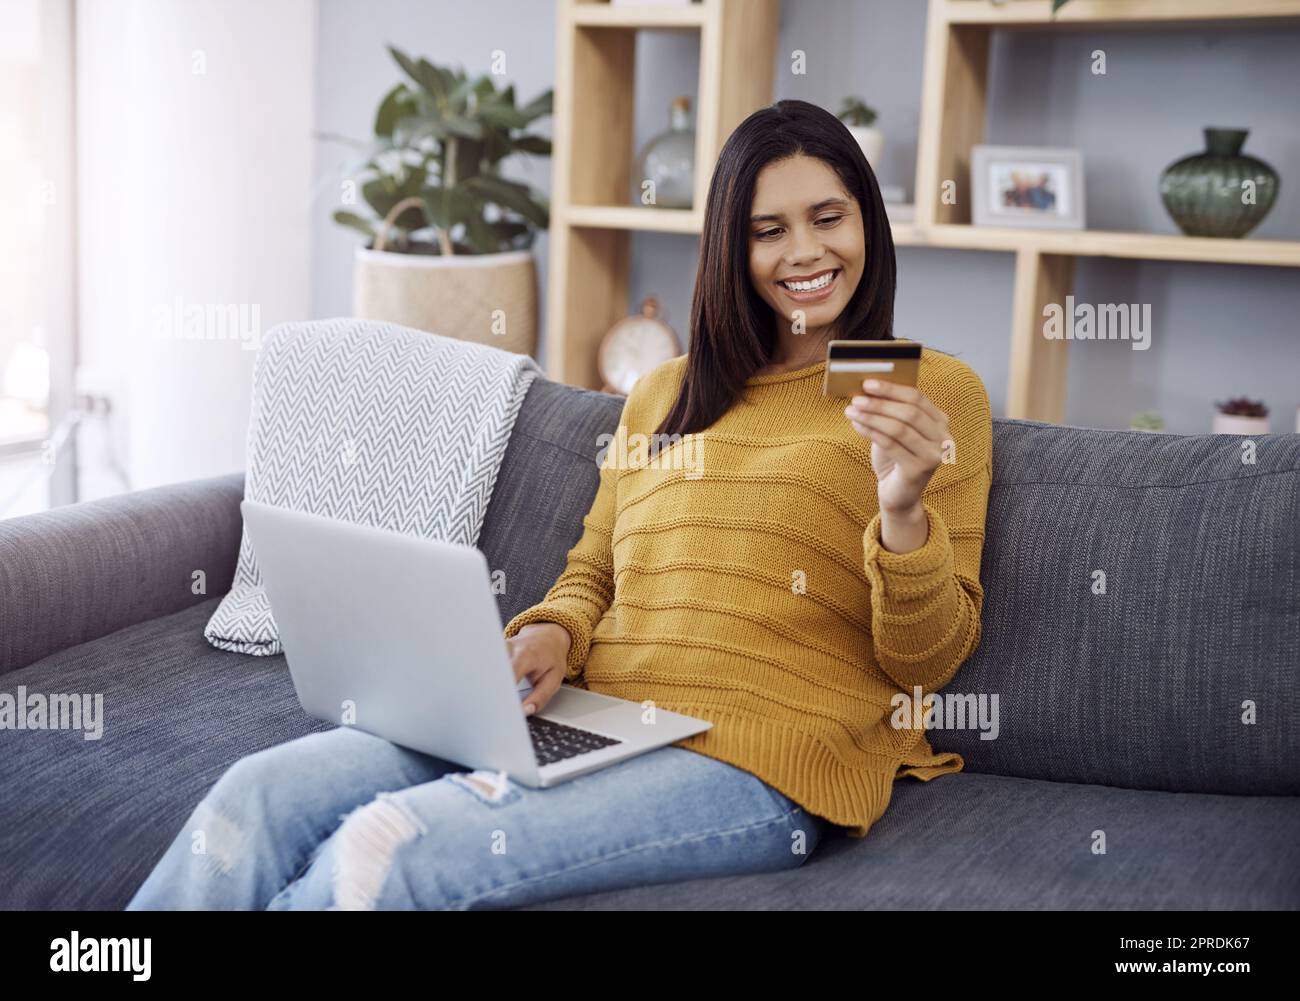 Faire du shopping dans le confort de votre maison. Une jeune femme attrayante fait du shopping en ligne sur son ordinateur portable tout en se relaxant sur un canapé à la maison. Banque D'Images